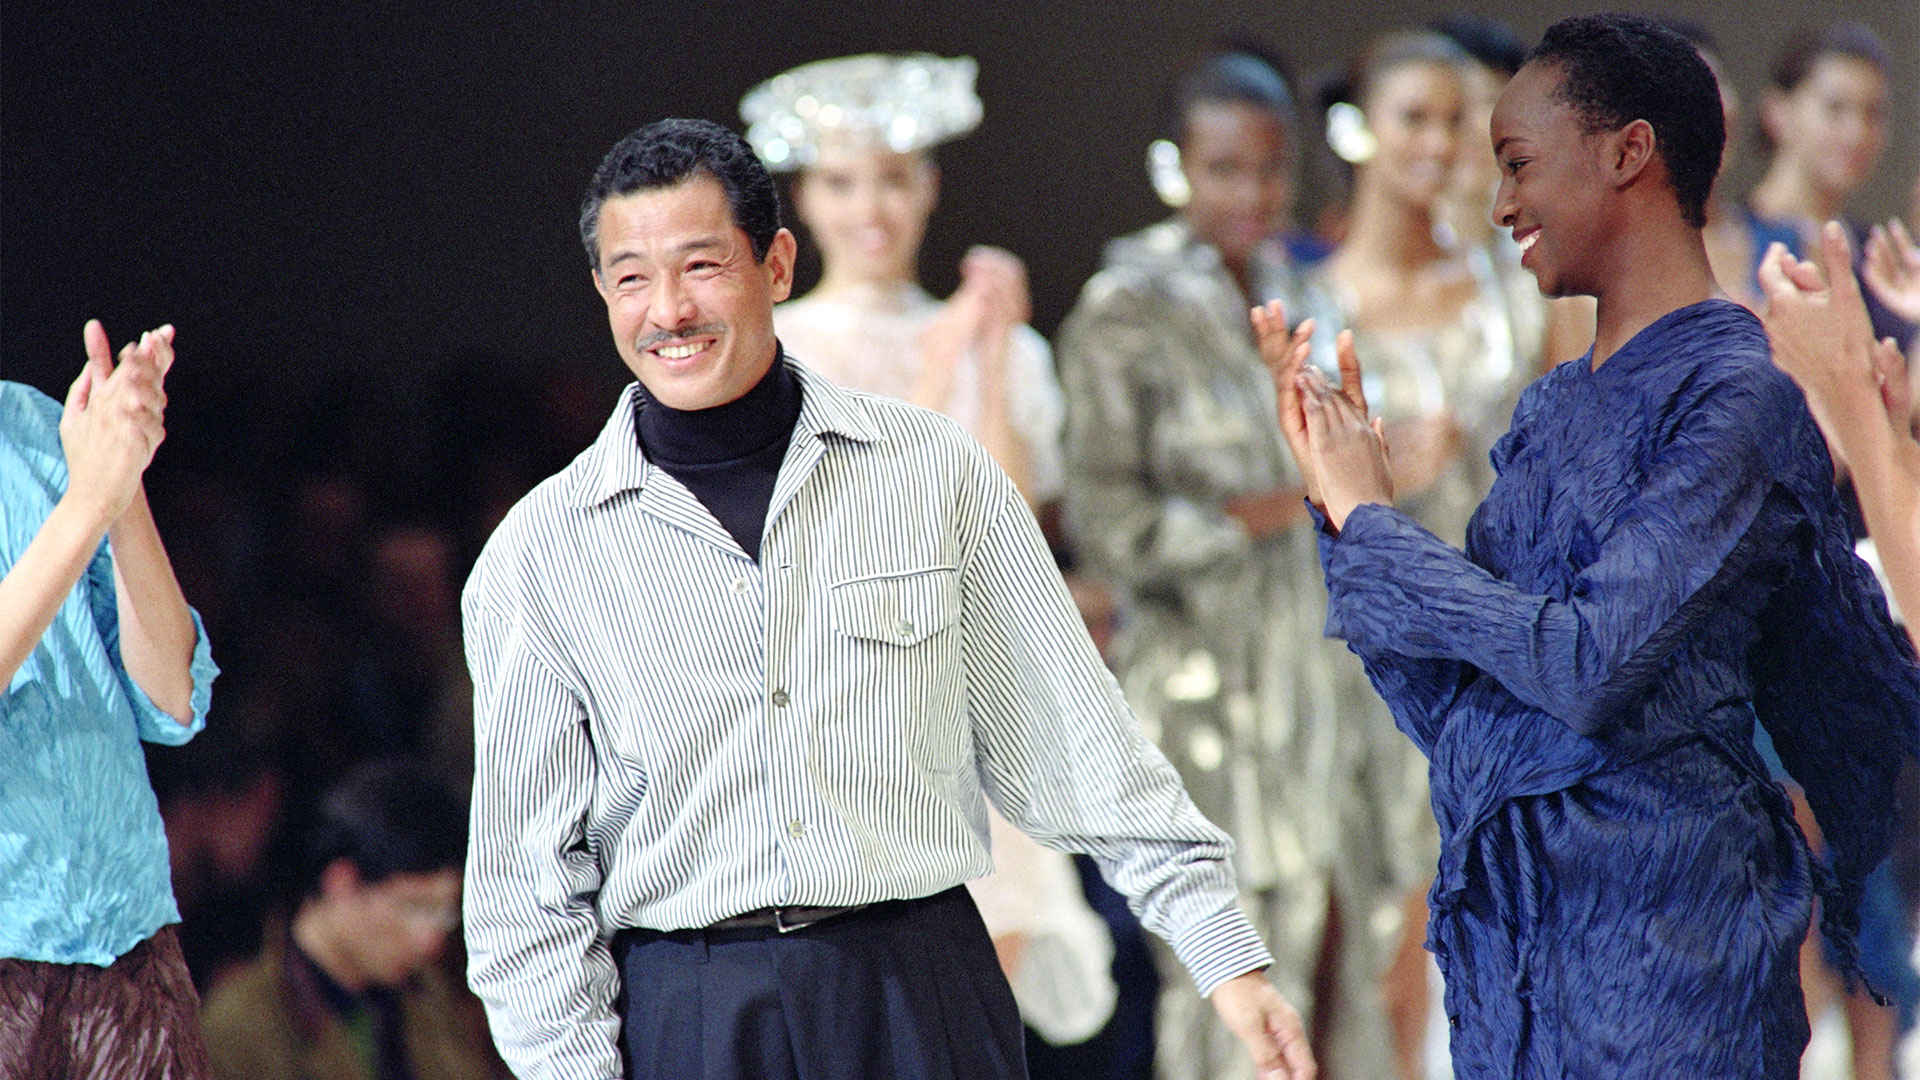 19 de octubre de 1991: Issey Miyake recibe aplausos de modelos y asistentes después de presentar su colección Primavera-Verano 1992 en París. (Foto de Pierre GUILLAUD / AFP)
